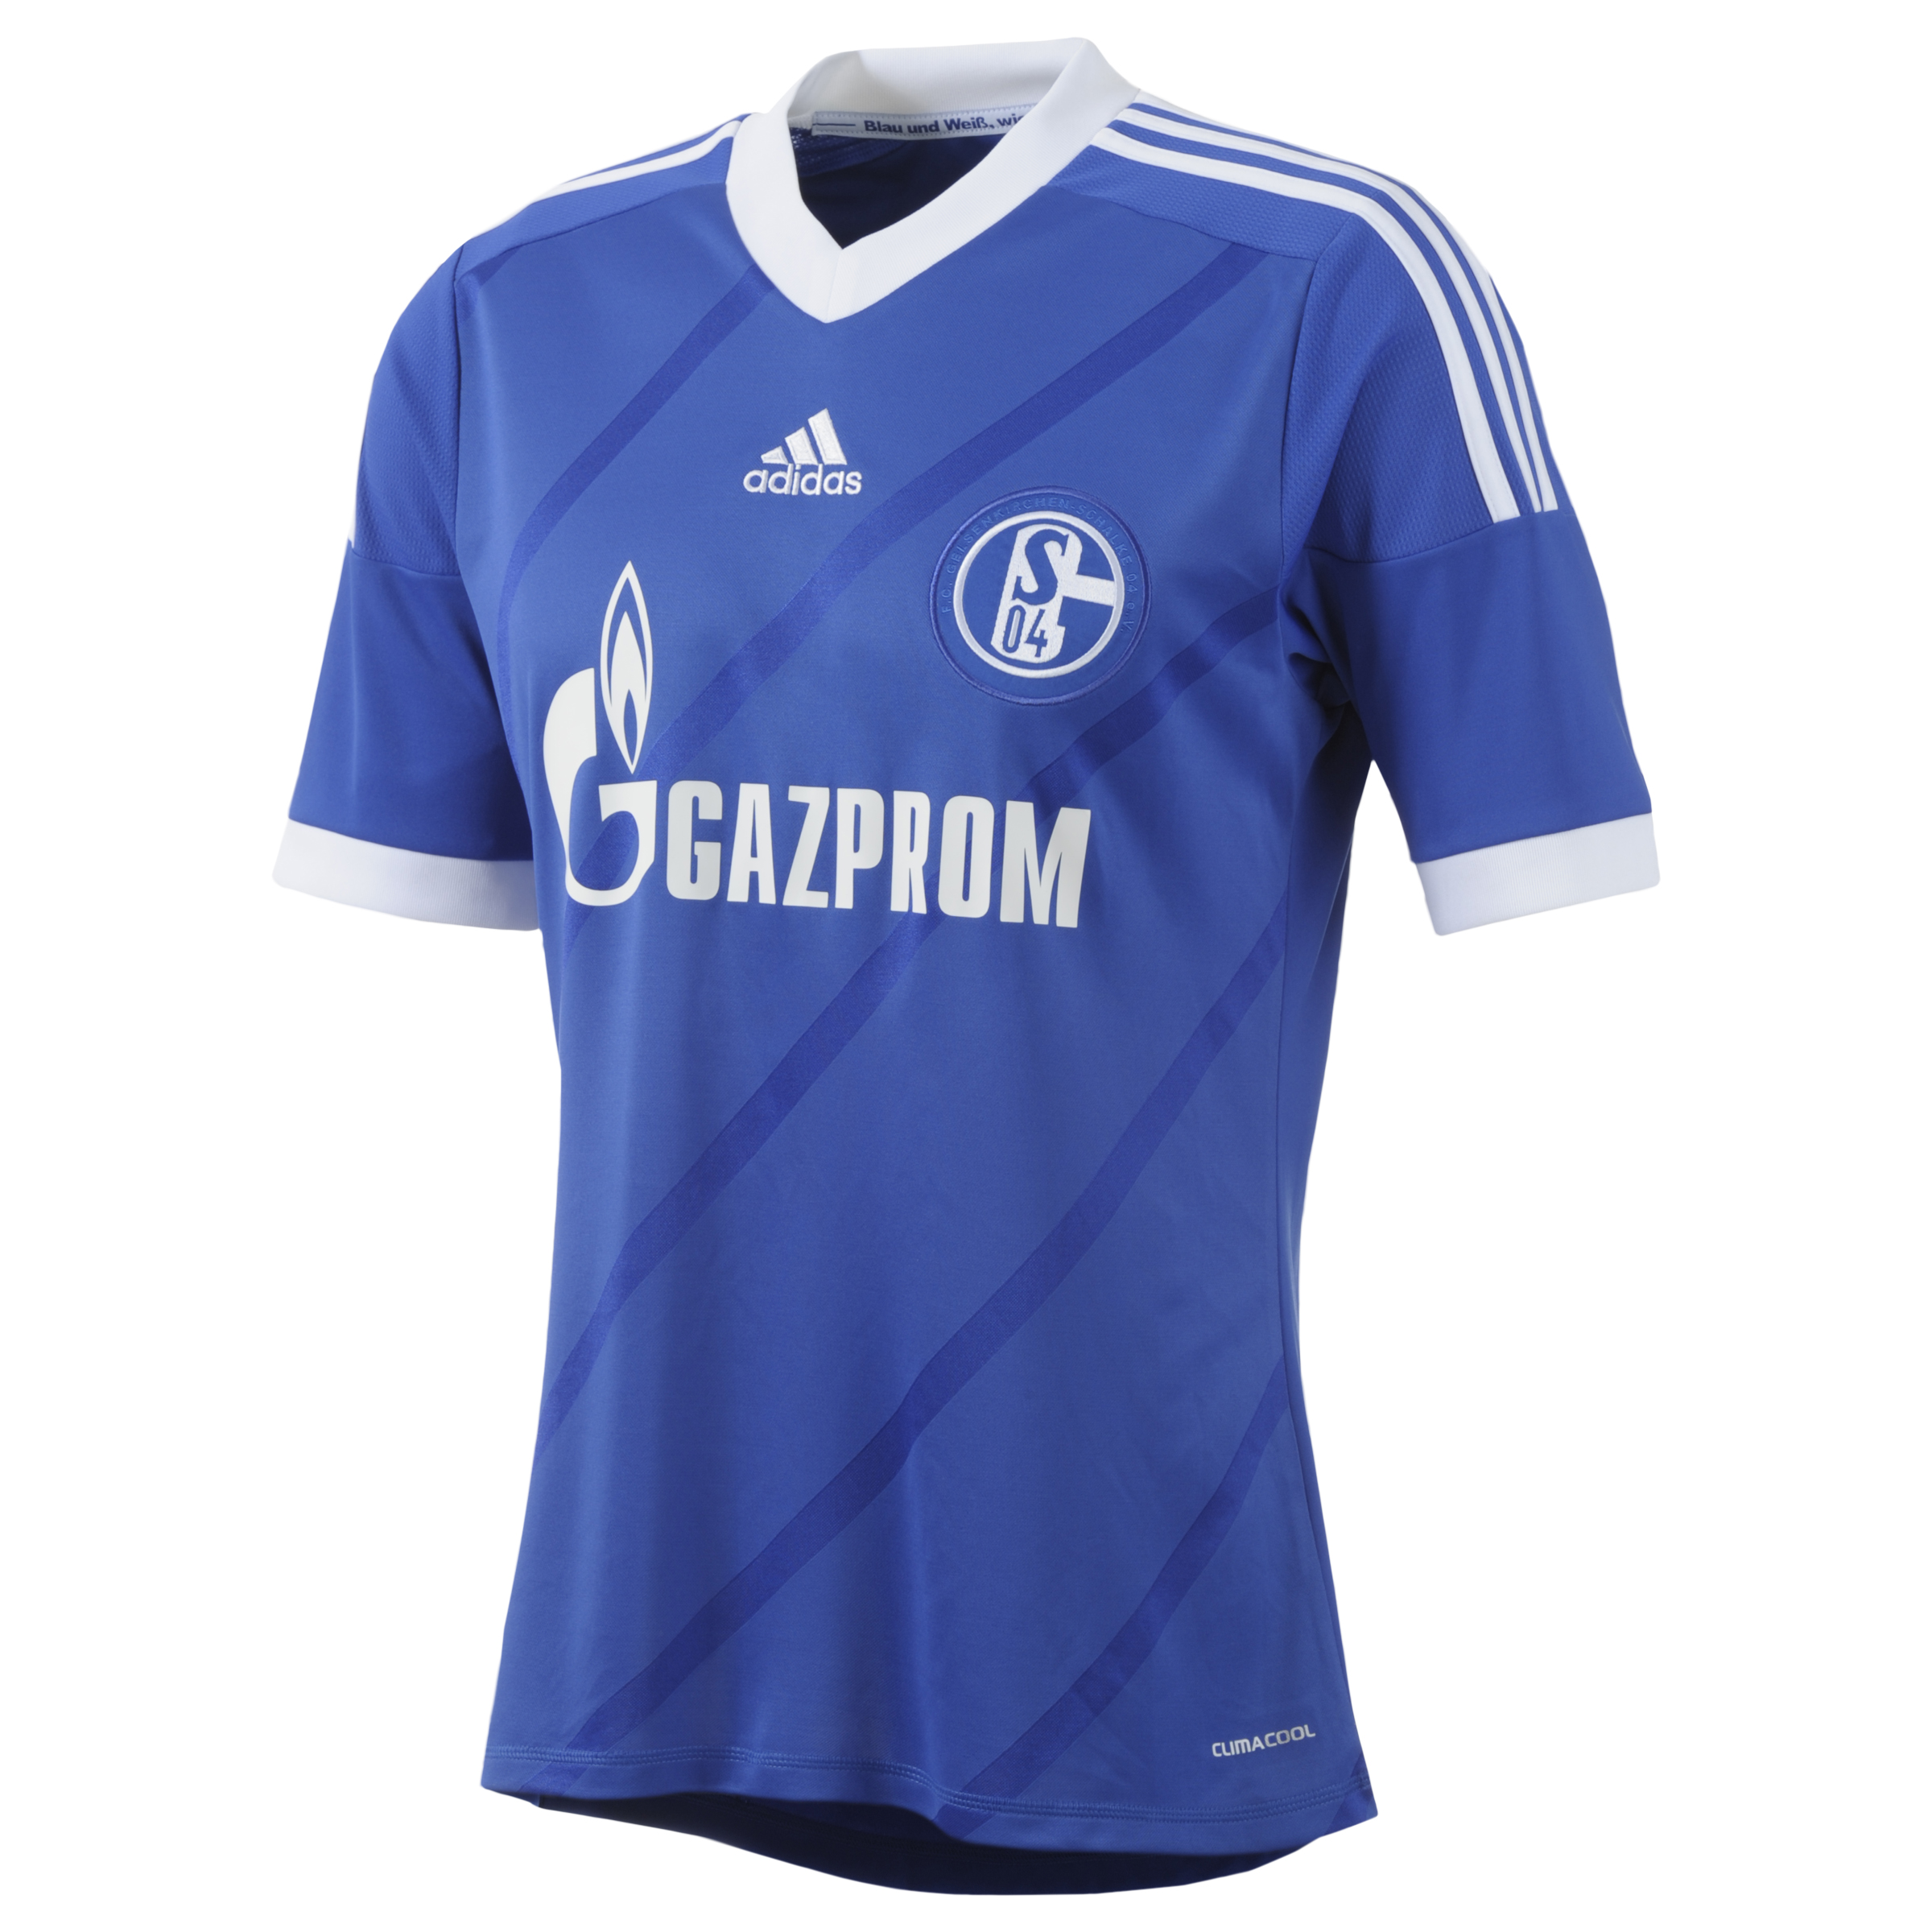 Schalke 04 Home Shirt 2013/14